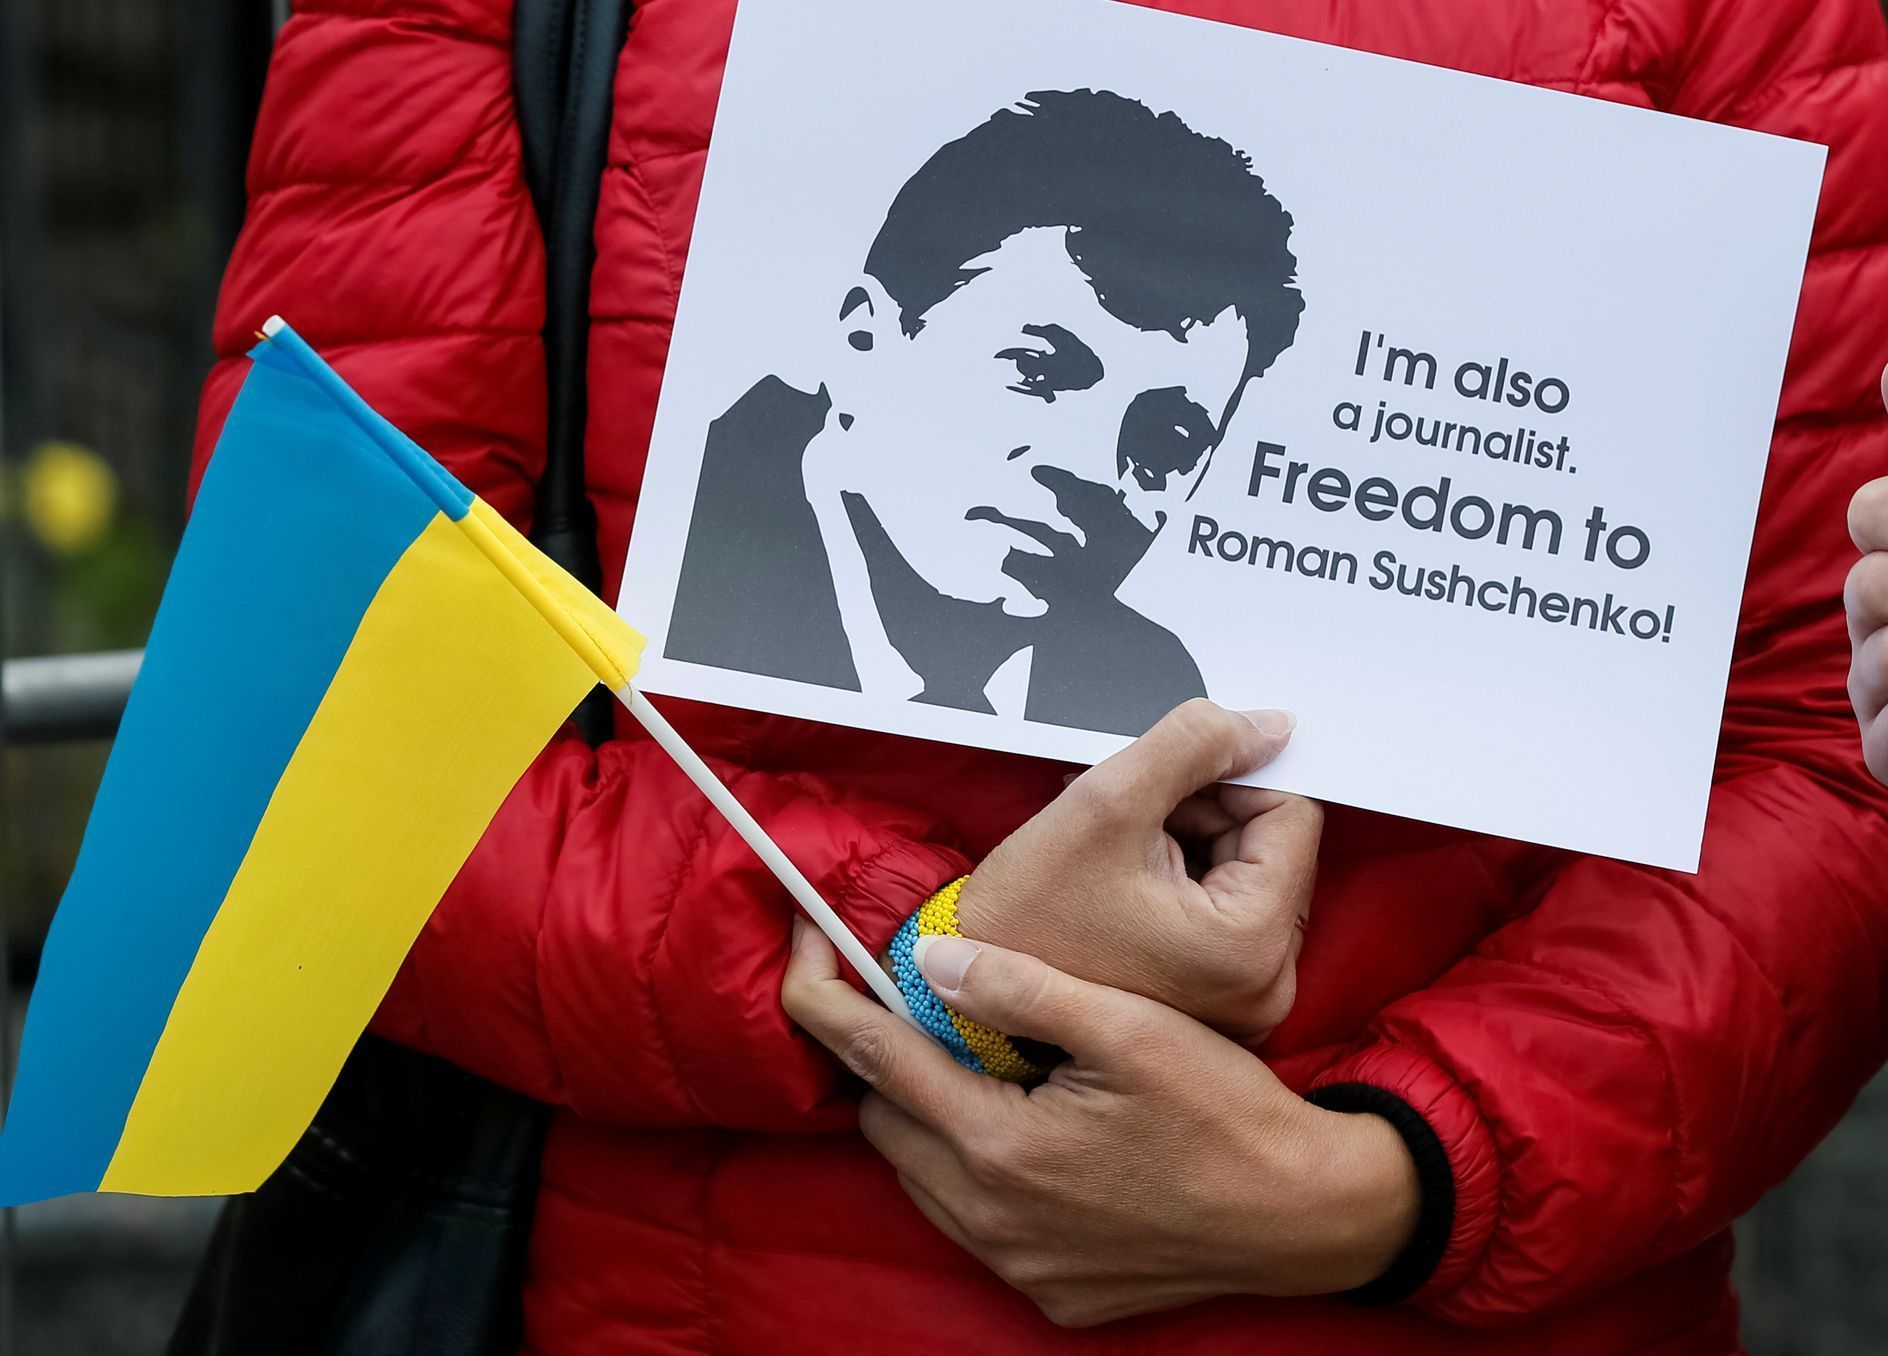 Demonstranti v Kyjevě, kteří požadují propuštění novináře Romana Suščenka. Ten je v Rusku viněn ze špionáže.